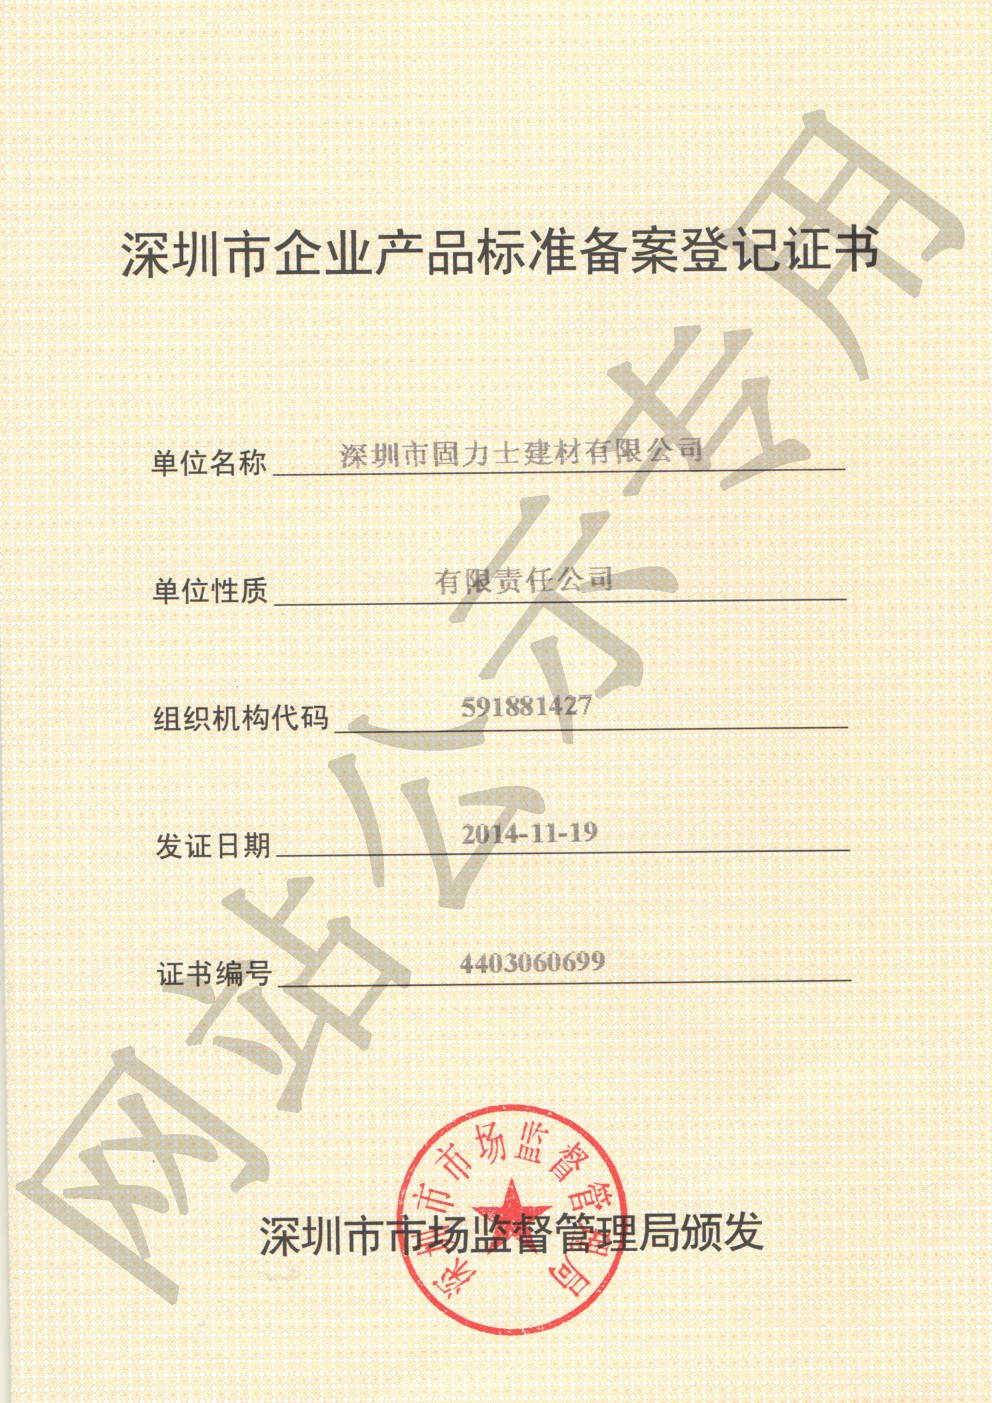 林甸企业产品标准登记证书